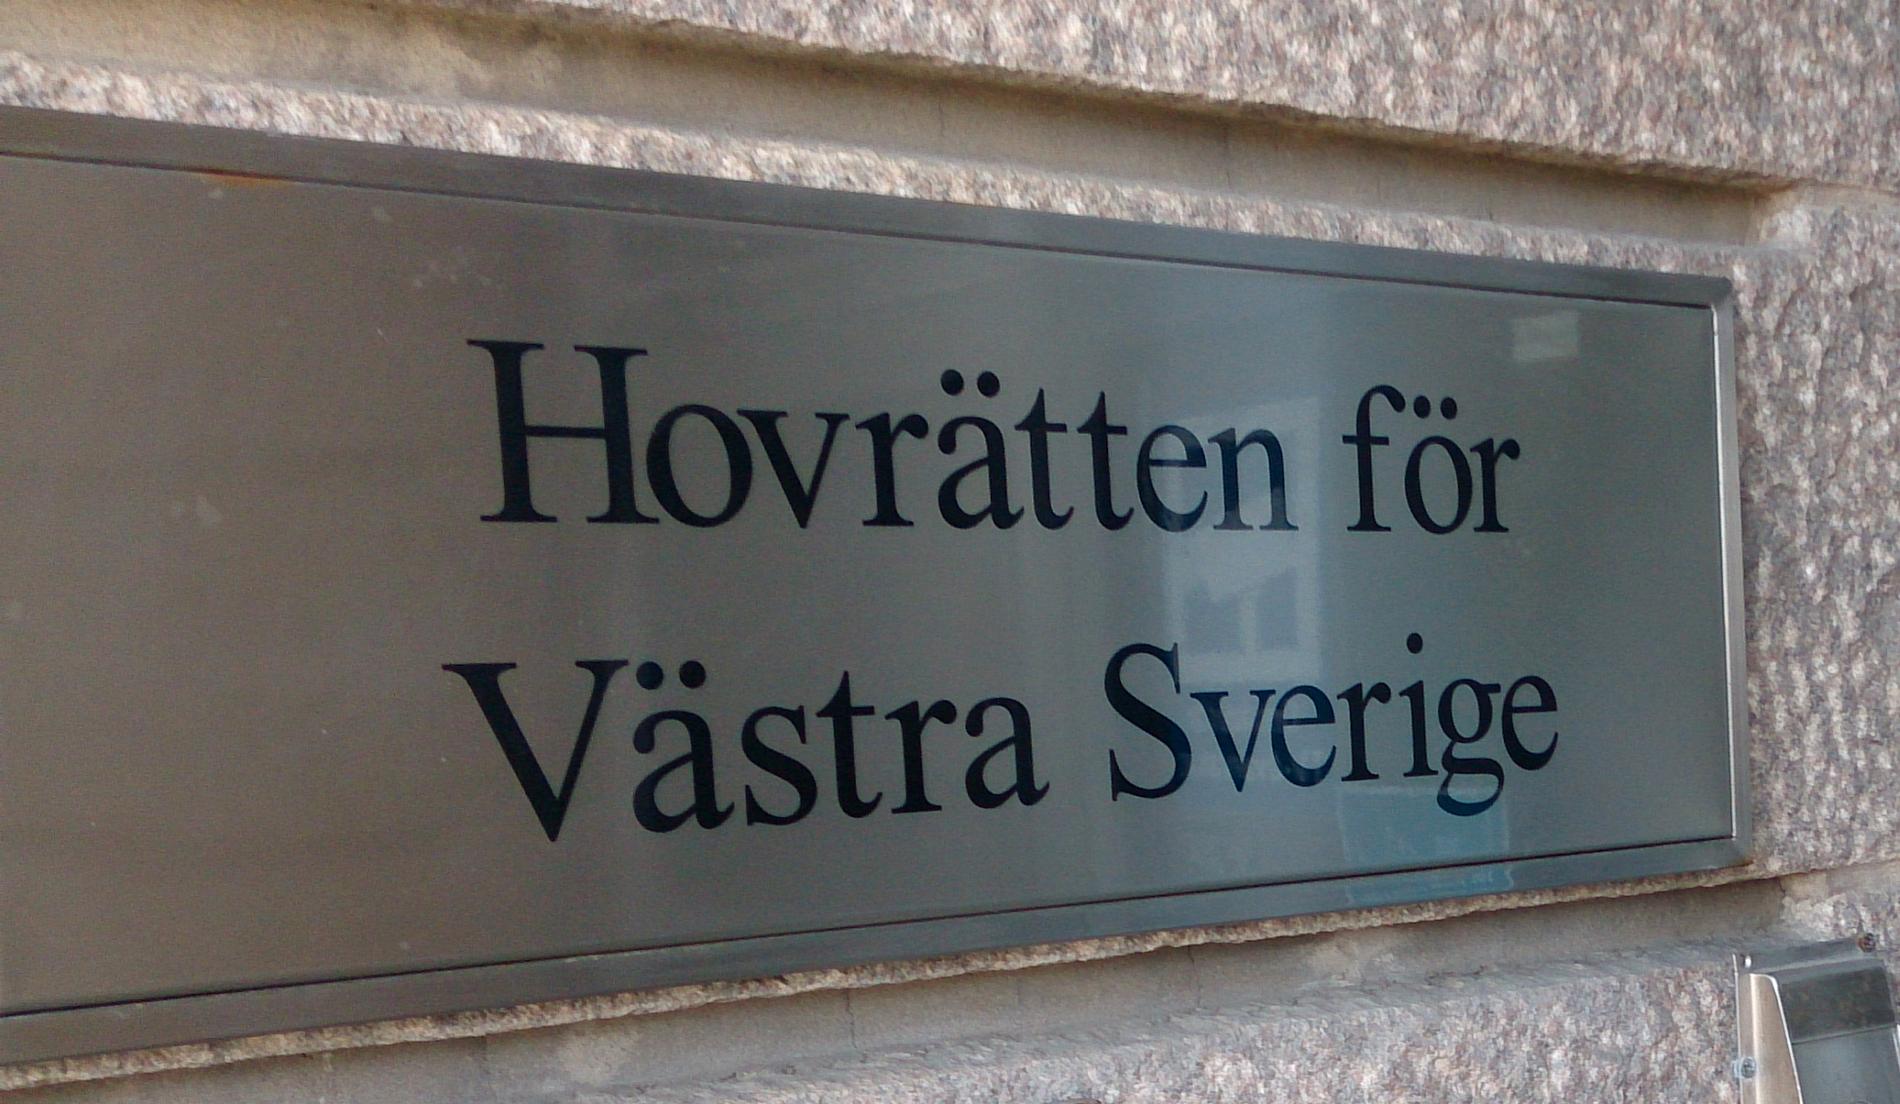 Hovrätten för Västra Sverige har rivit upp en folkstorm efter en friande dom i förra veckan. Arkivbild.